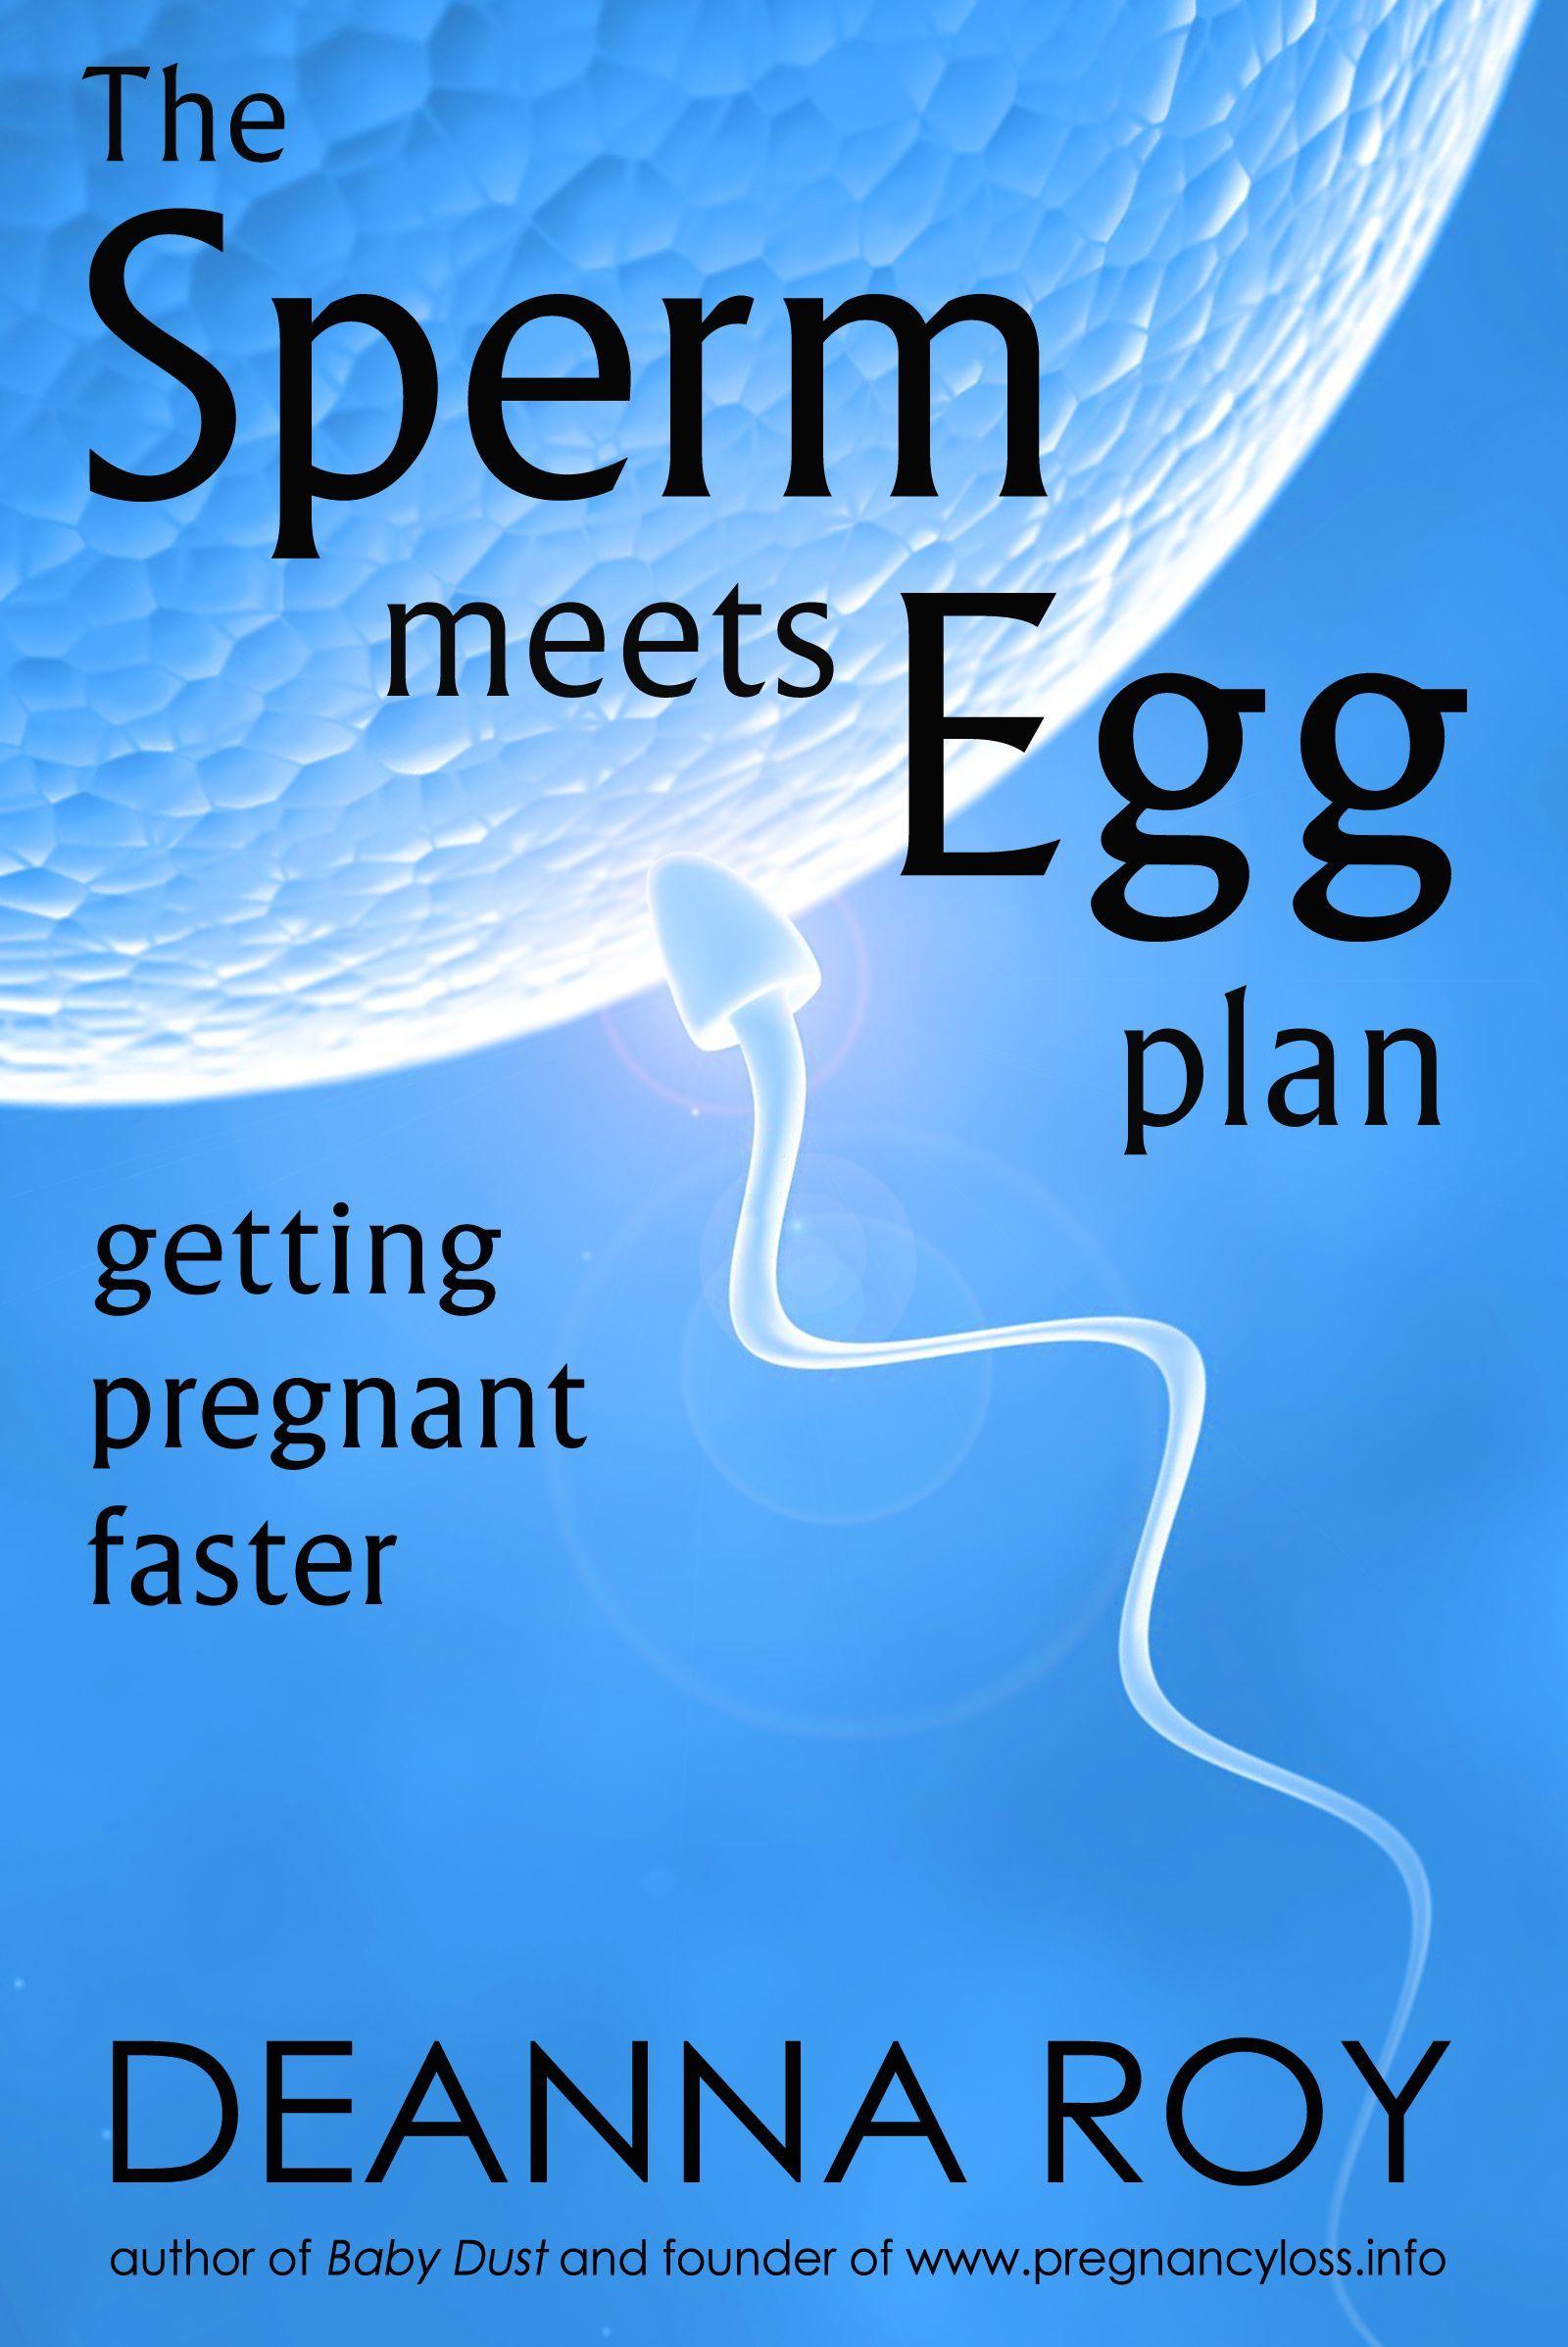 Txt sperm fertilize her